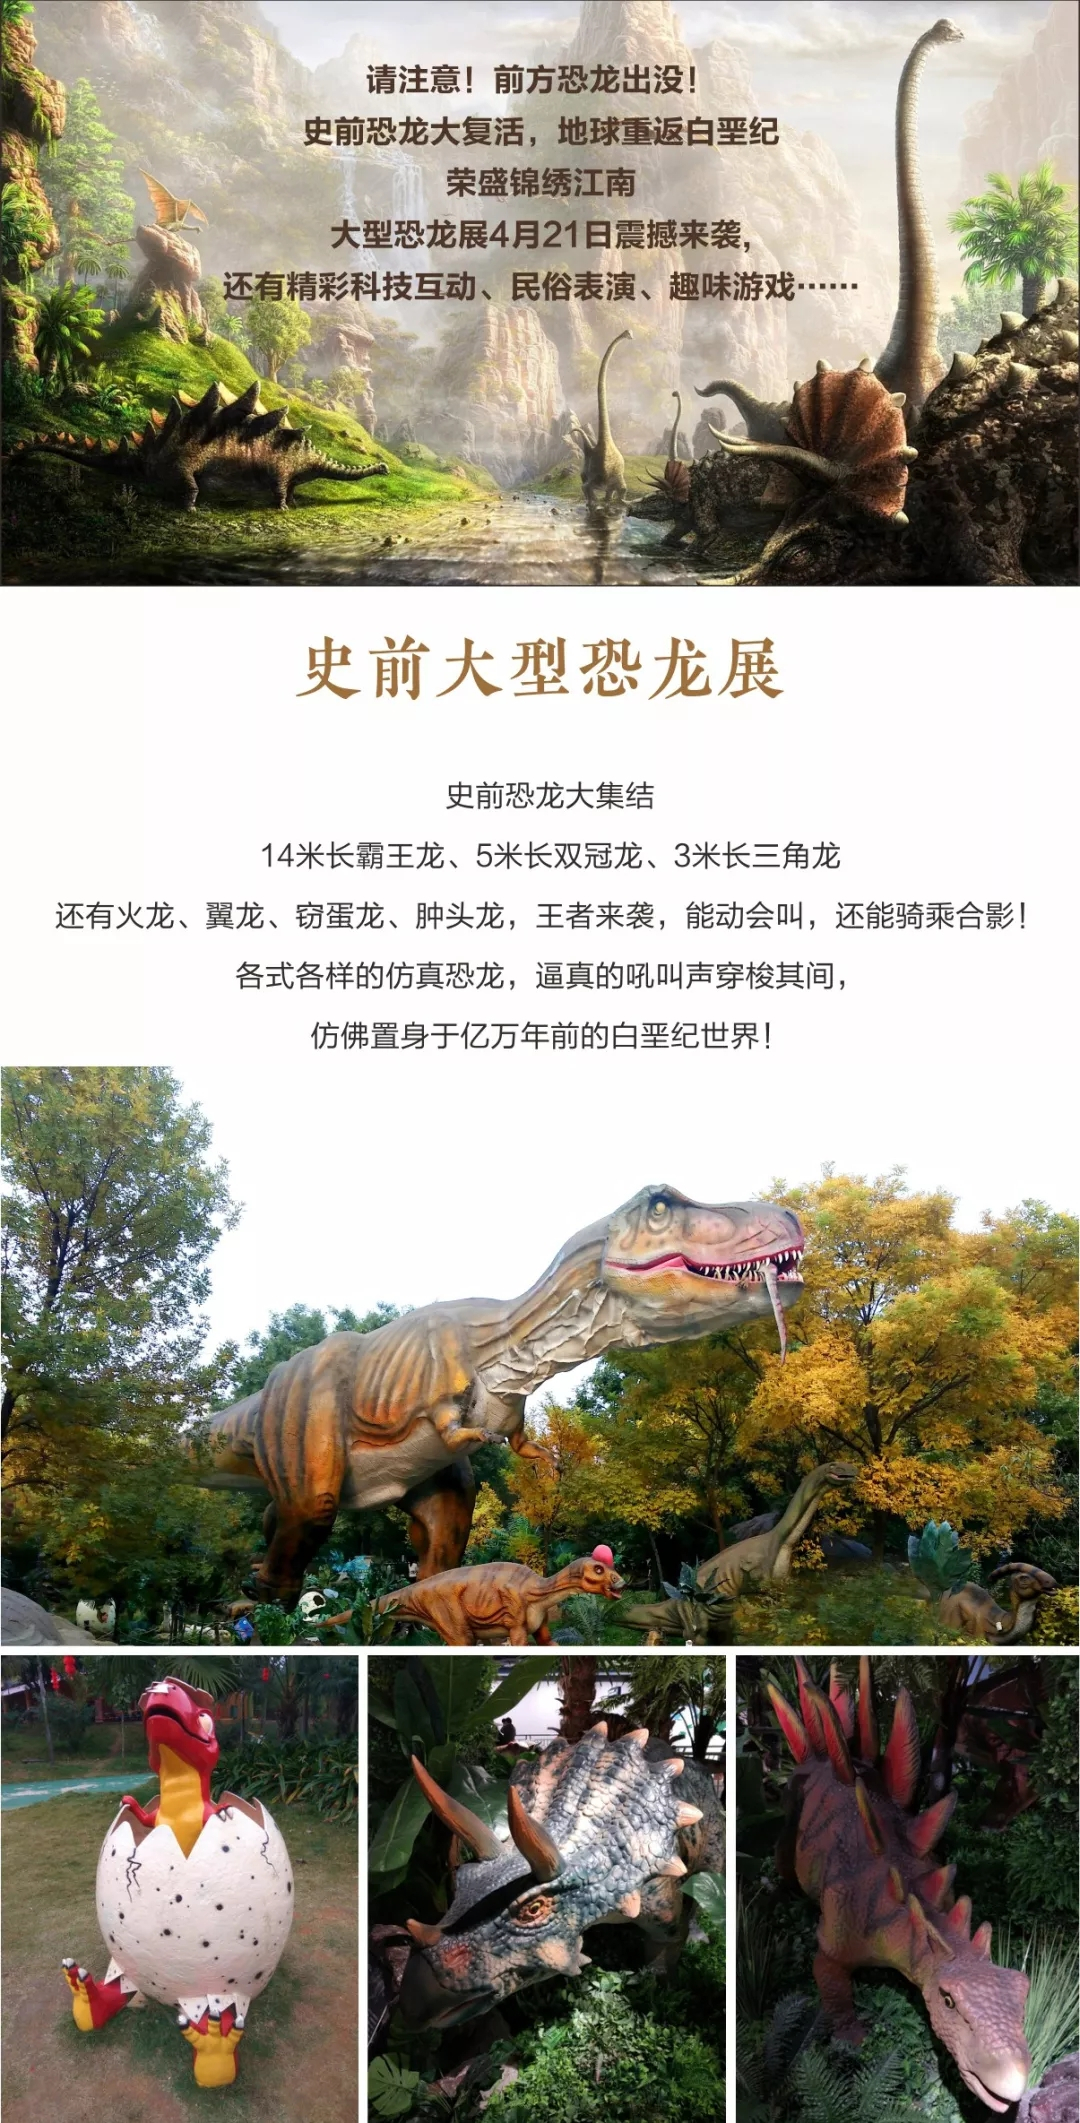 恐龙来啦！荣盛锦绣江南大型恐龙展，带你重返白垩纪！